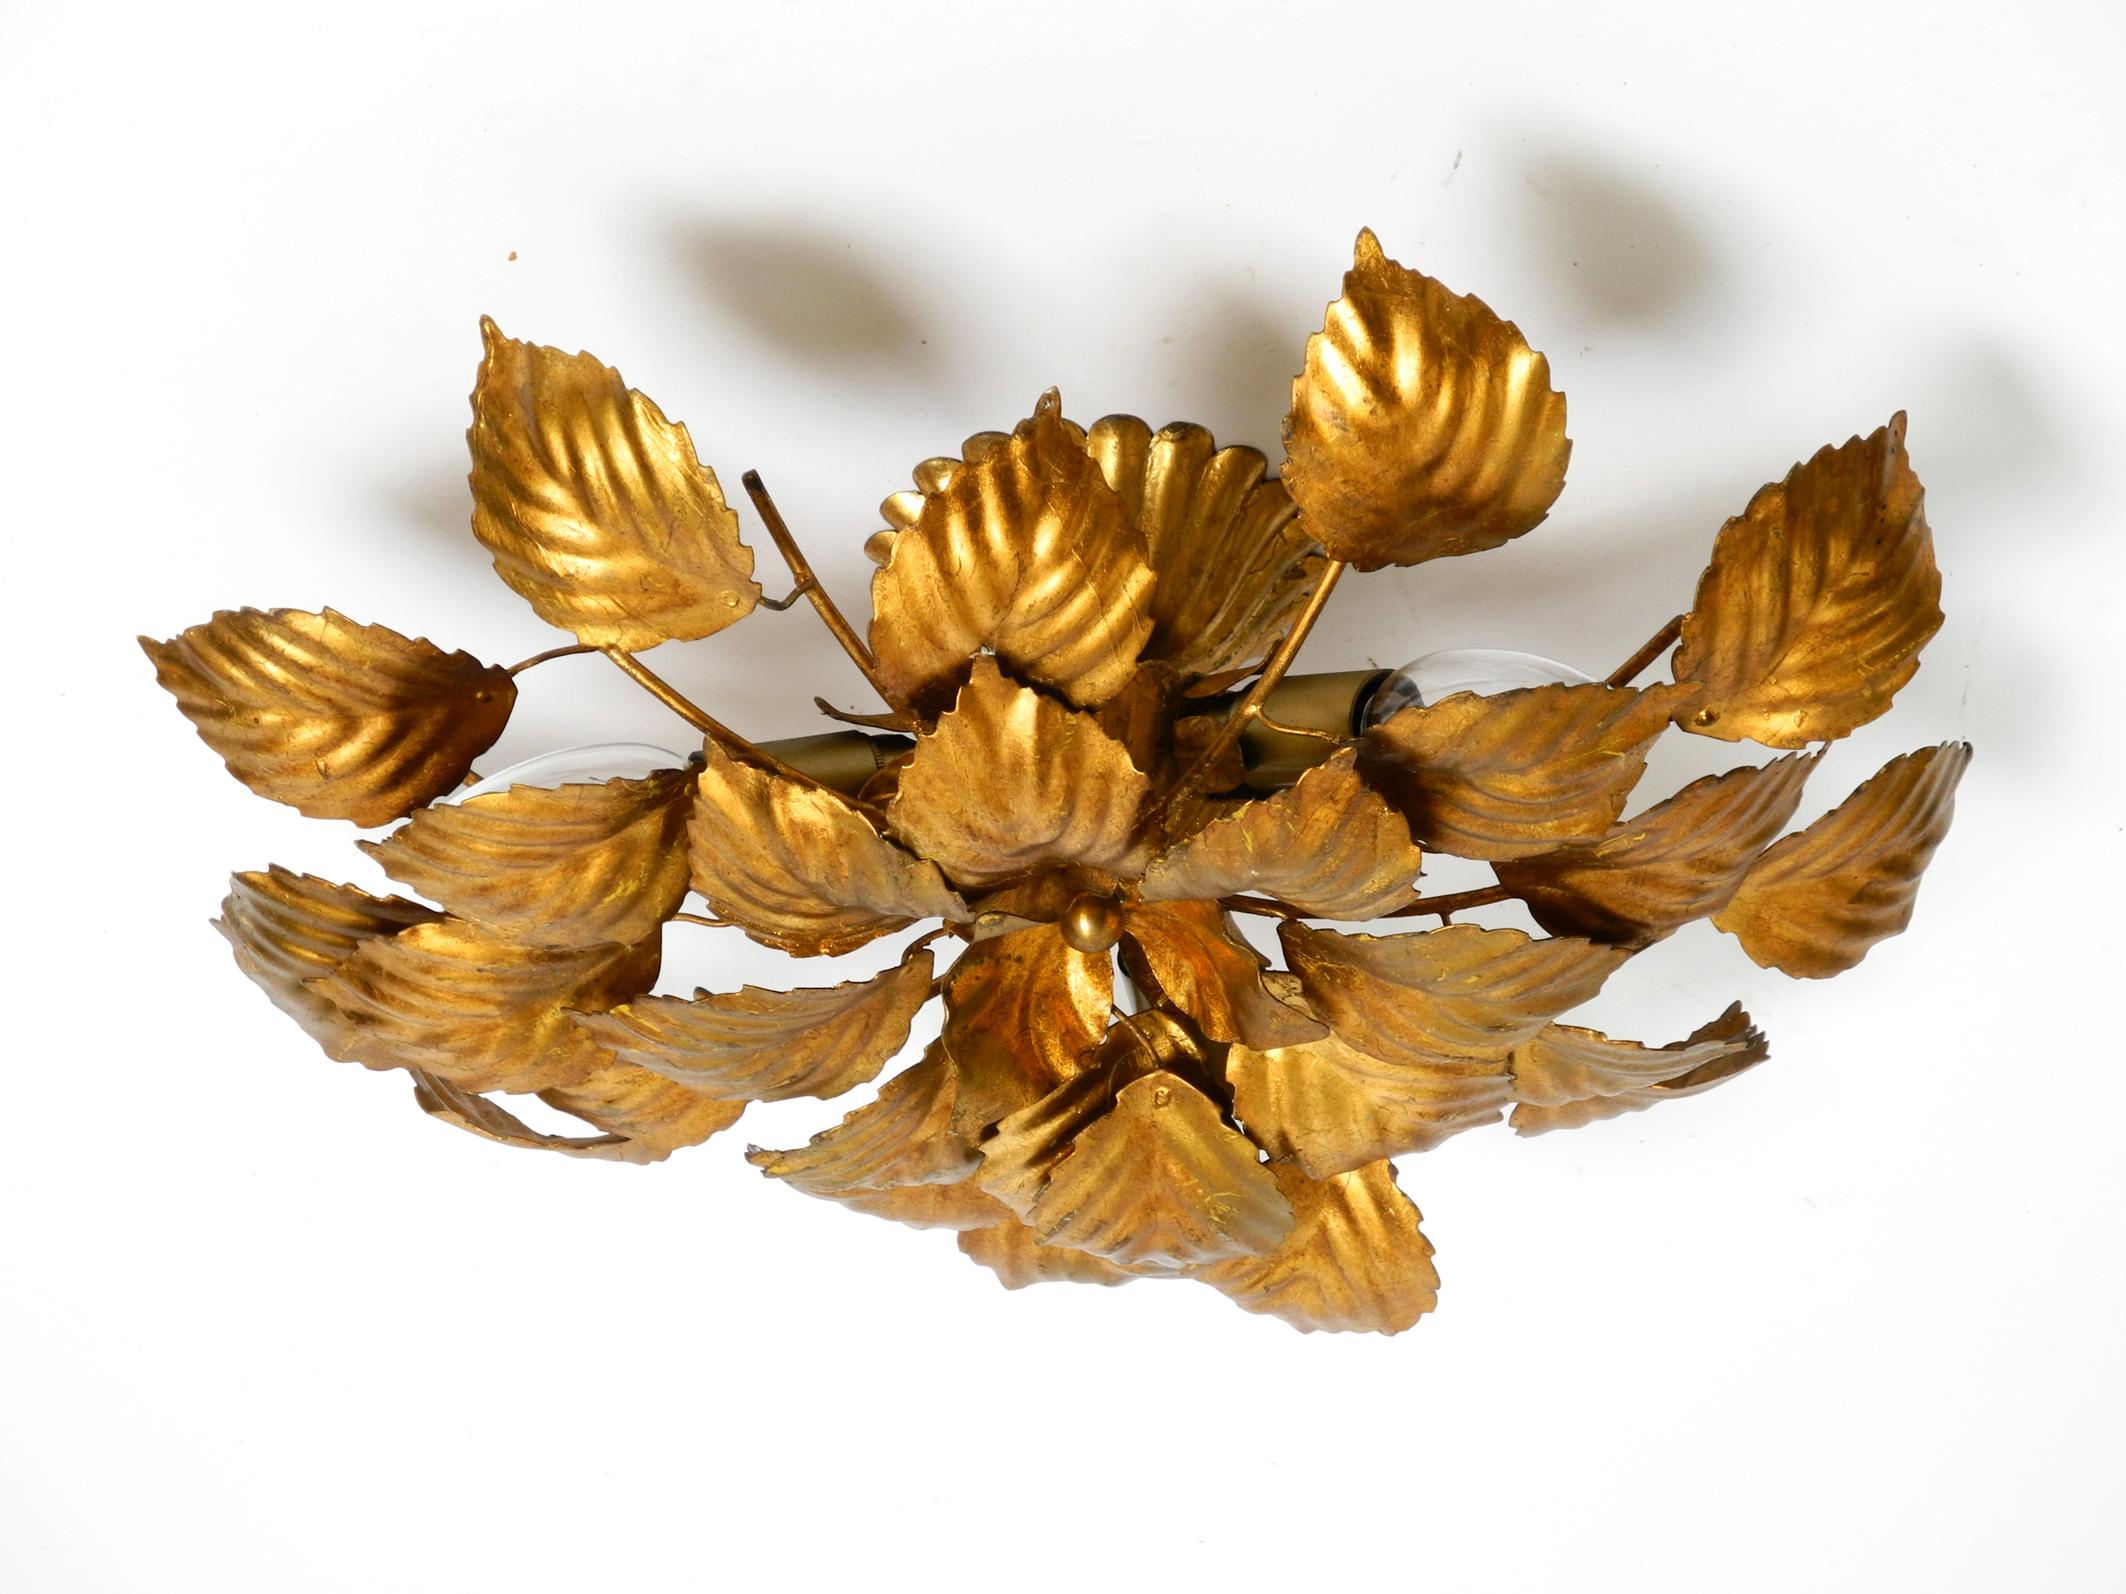 Schöne vergoldete florale Hollywood-Regency-Deckenlampe aus den 1980er Jahren mit großen Blättern.
Sehr elegantes Design mit realistischen großen Blättern aus vergoldetem Metall.
Voll funktionsfähig mit drei E14-Fassungen. Geeignet für alle